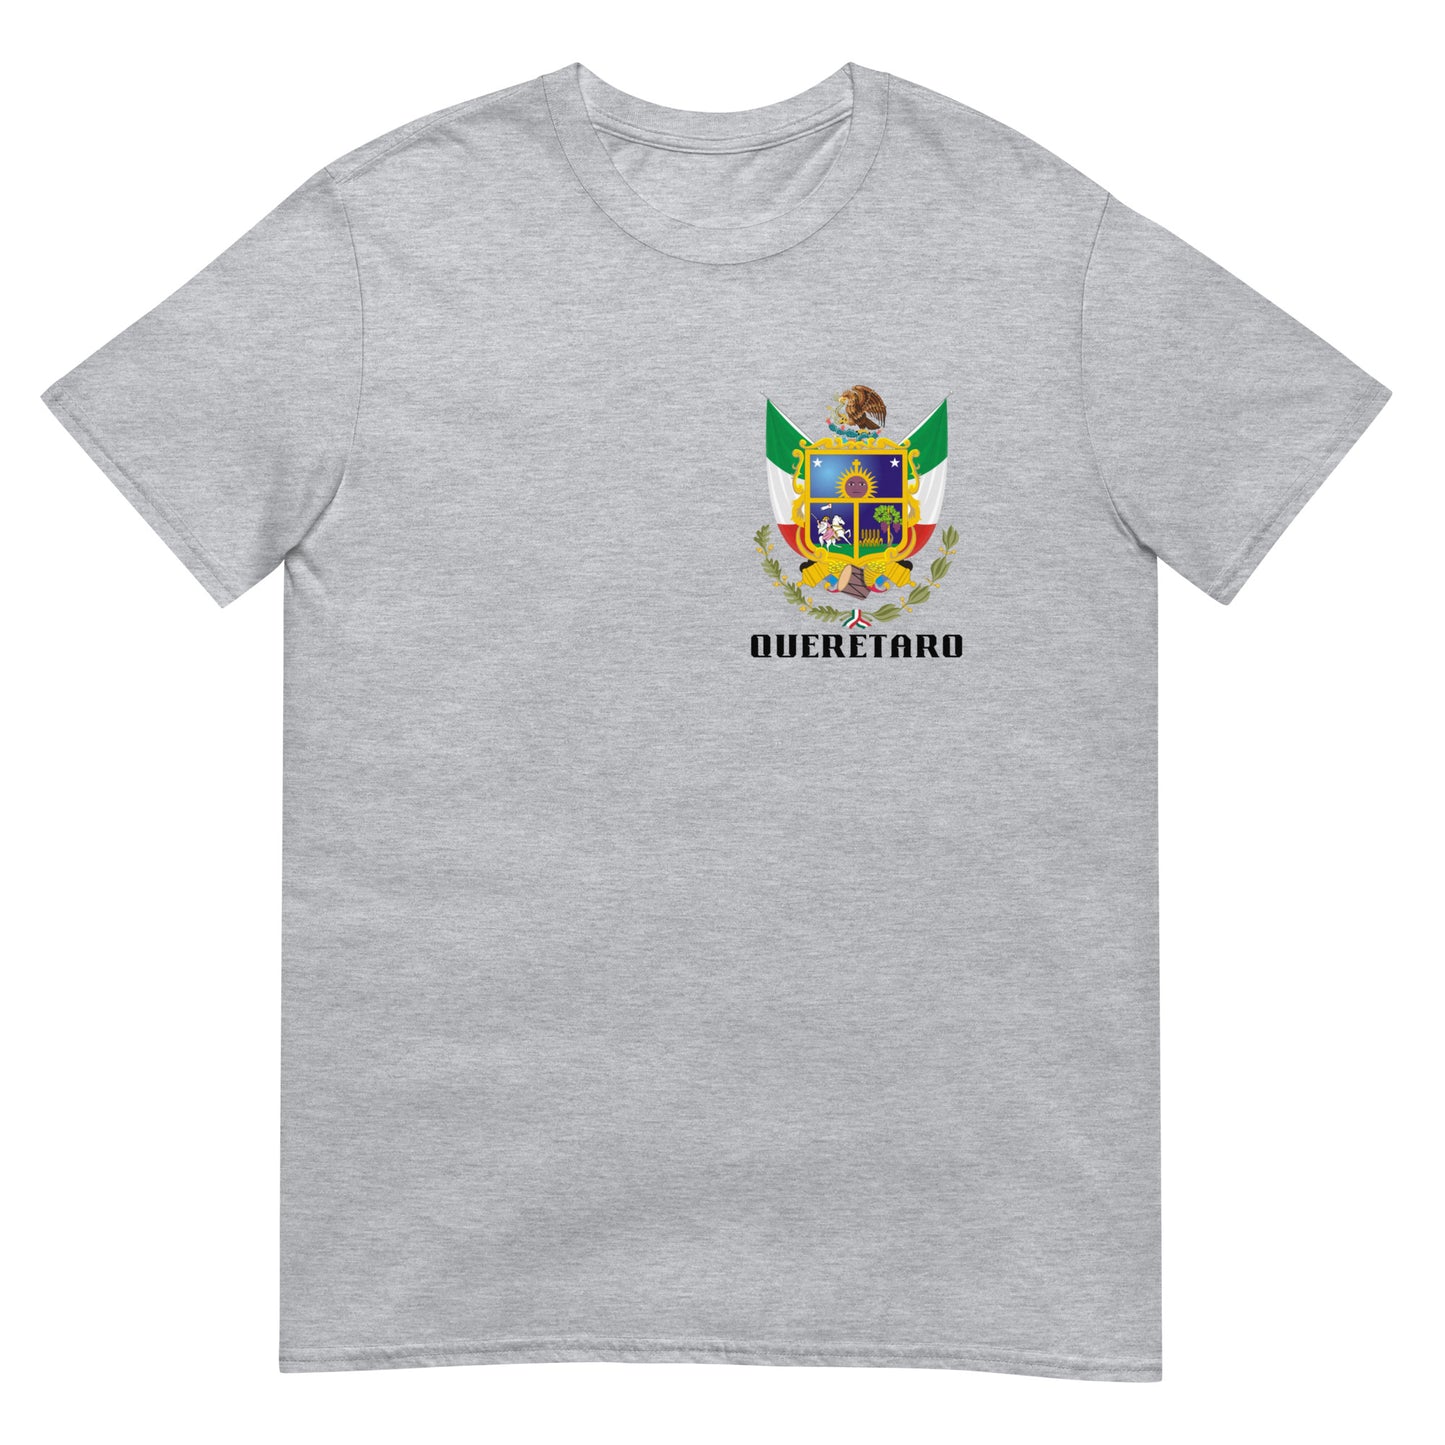 Queretaro - T-Shirt